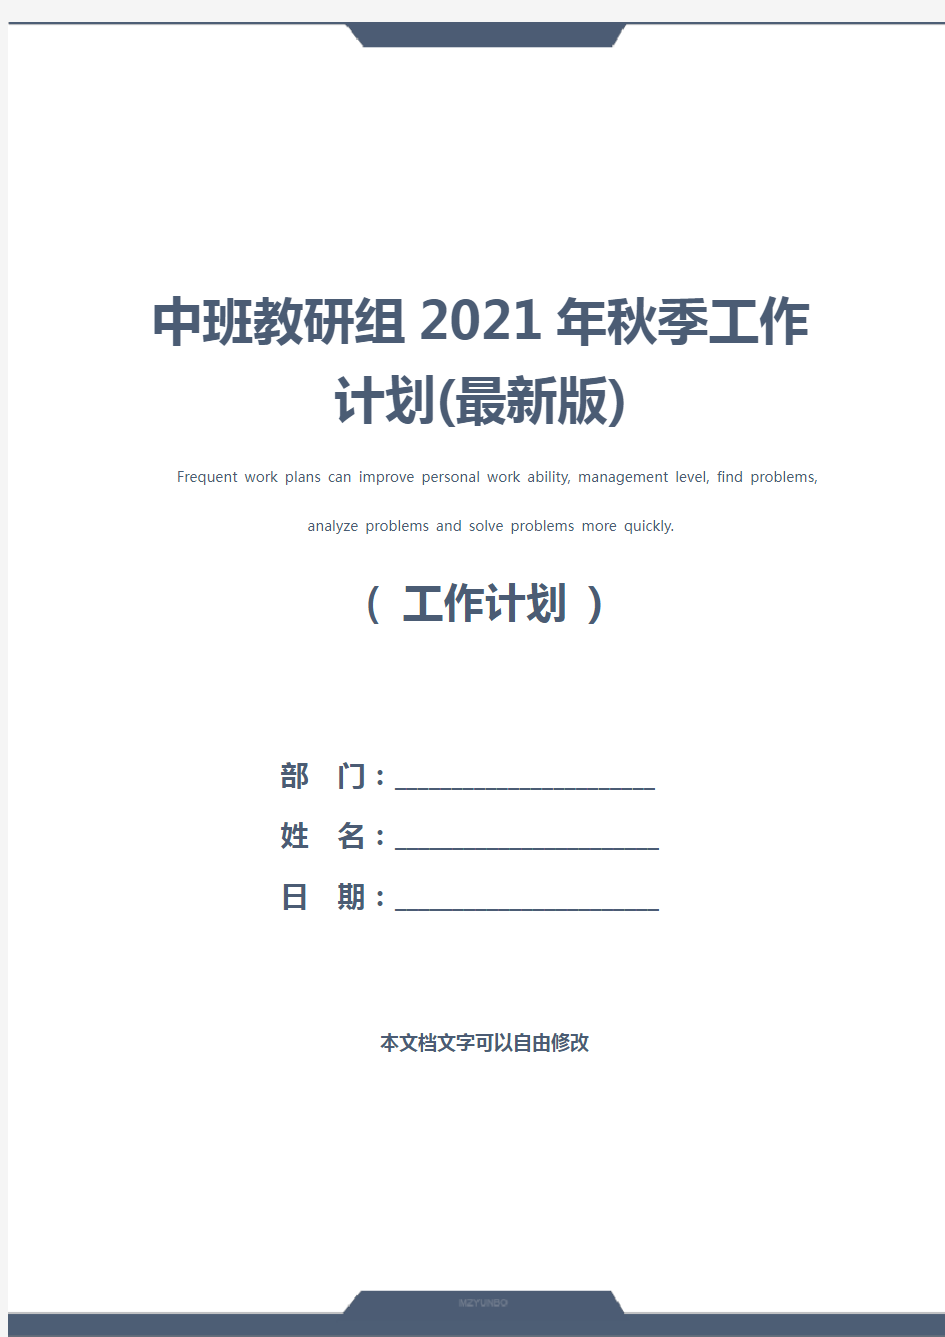 中班教研组2021年秋季工作计划(最新版)